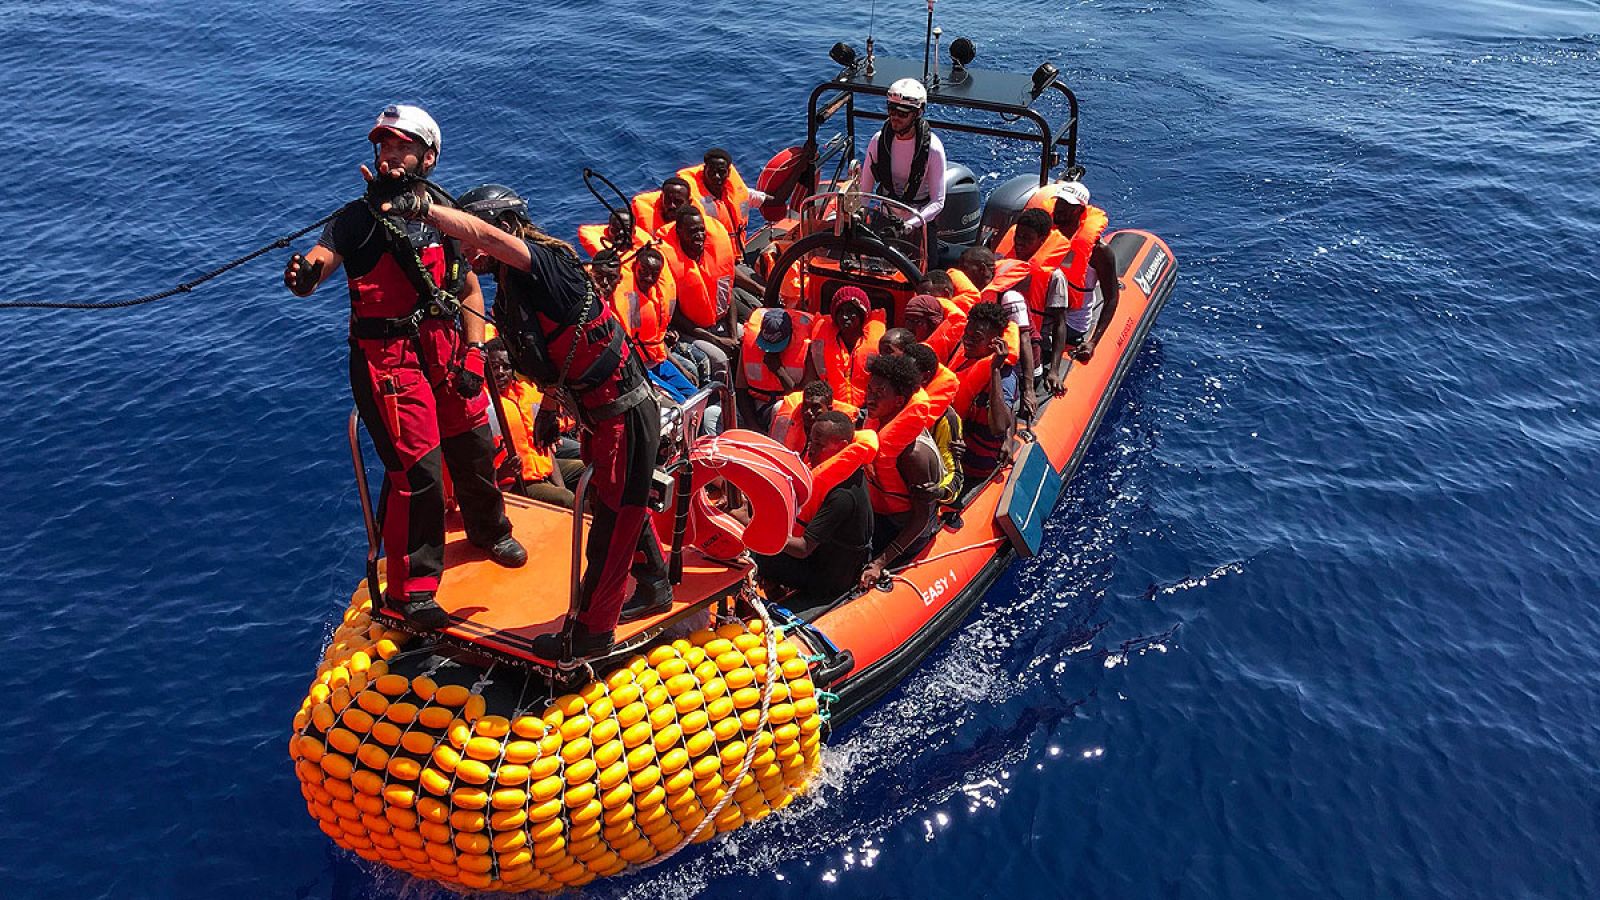 Una barca hinchable del Ocean Vinking transporta a un grupo de migrantes rescatados en el Mediterráneo.